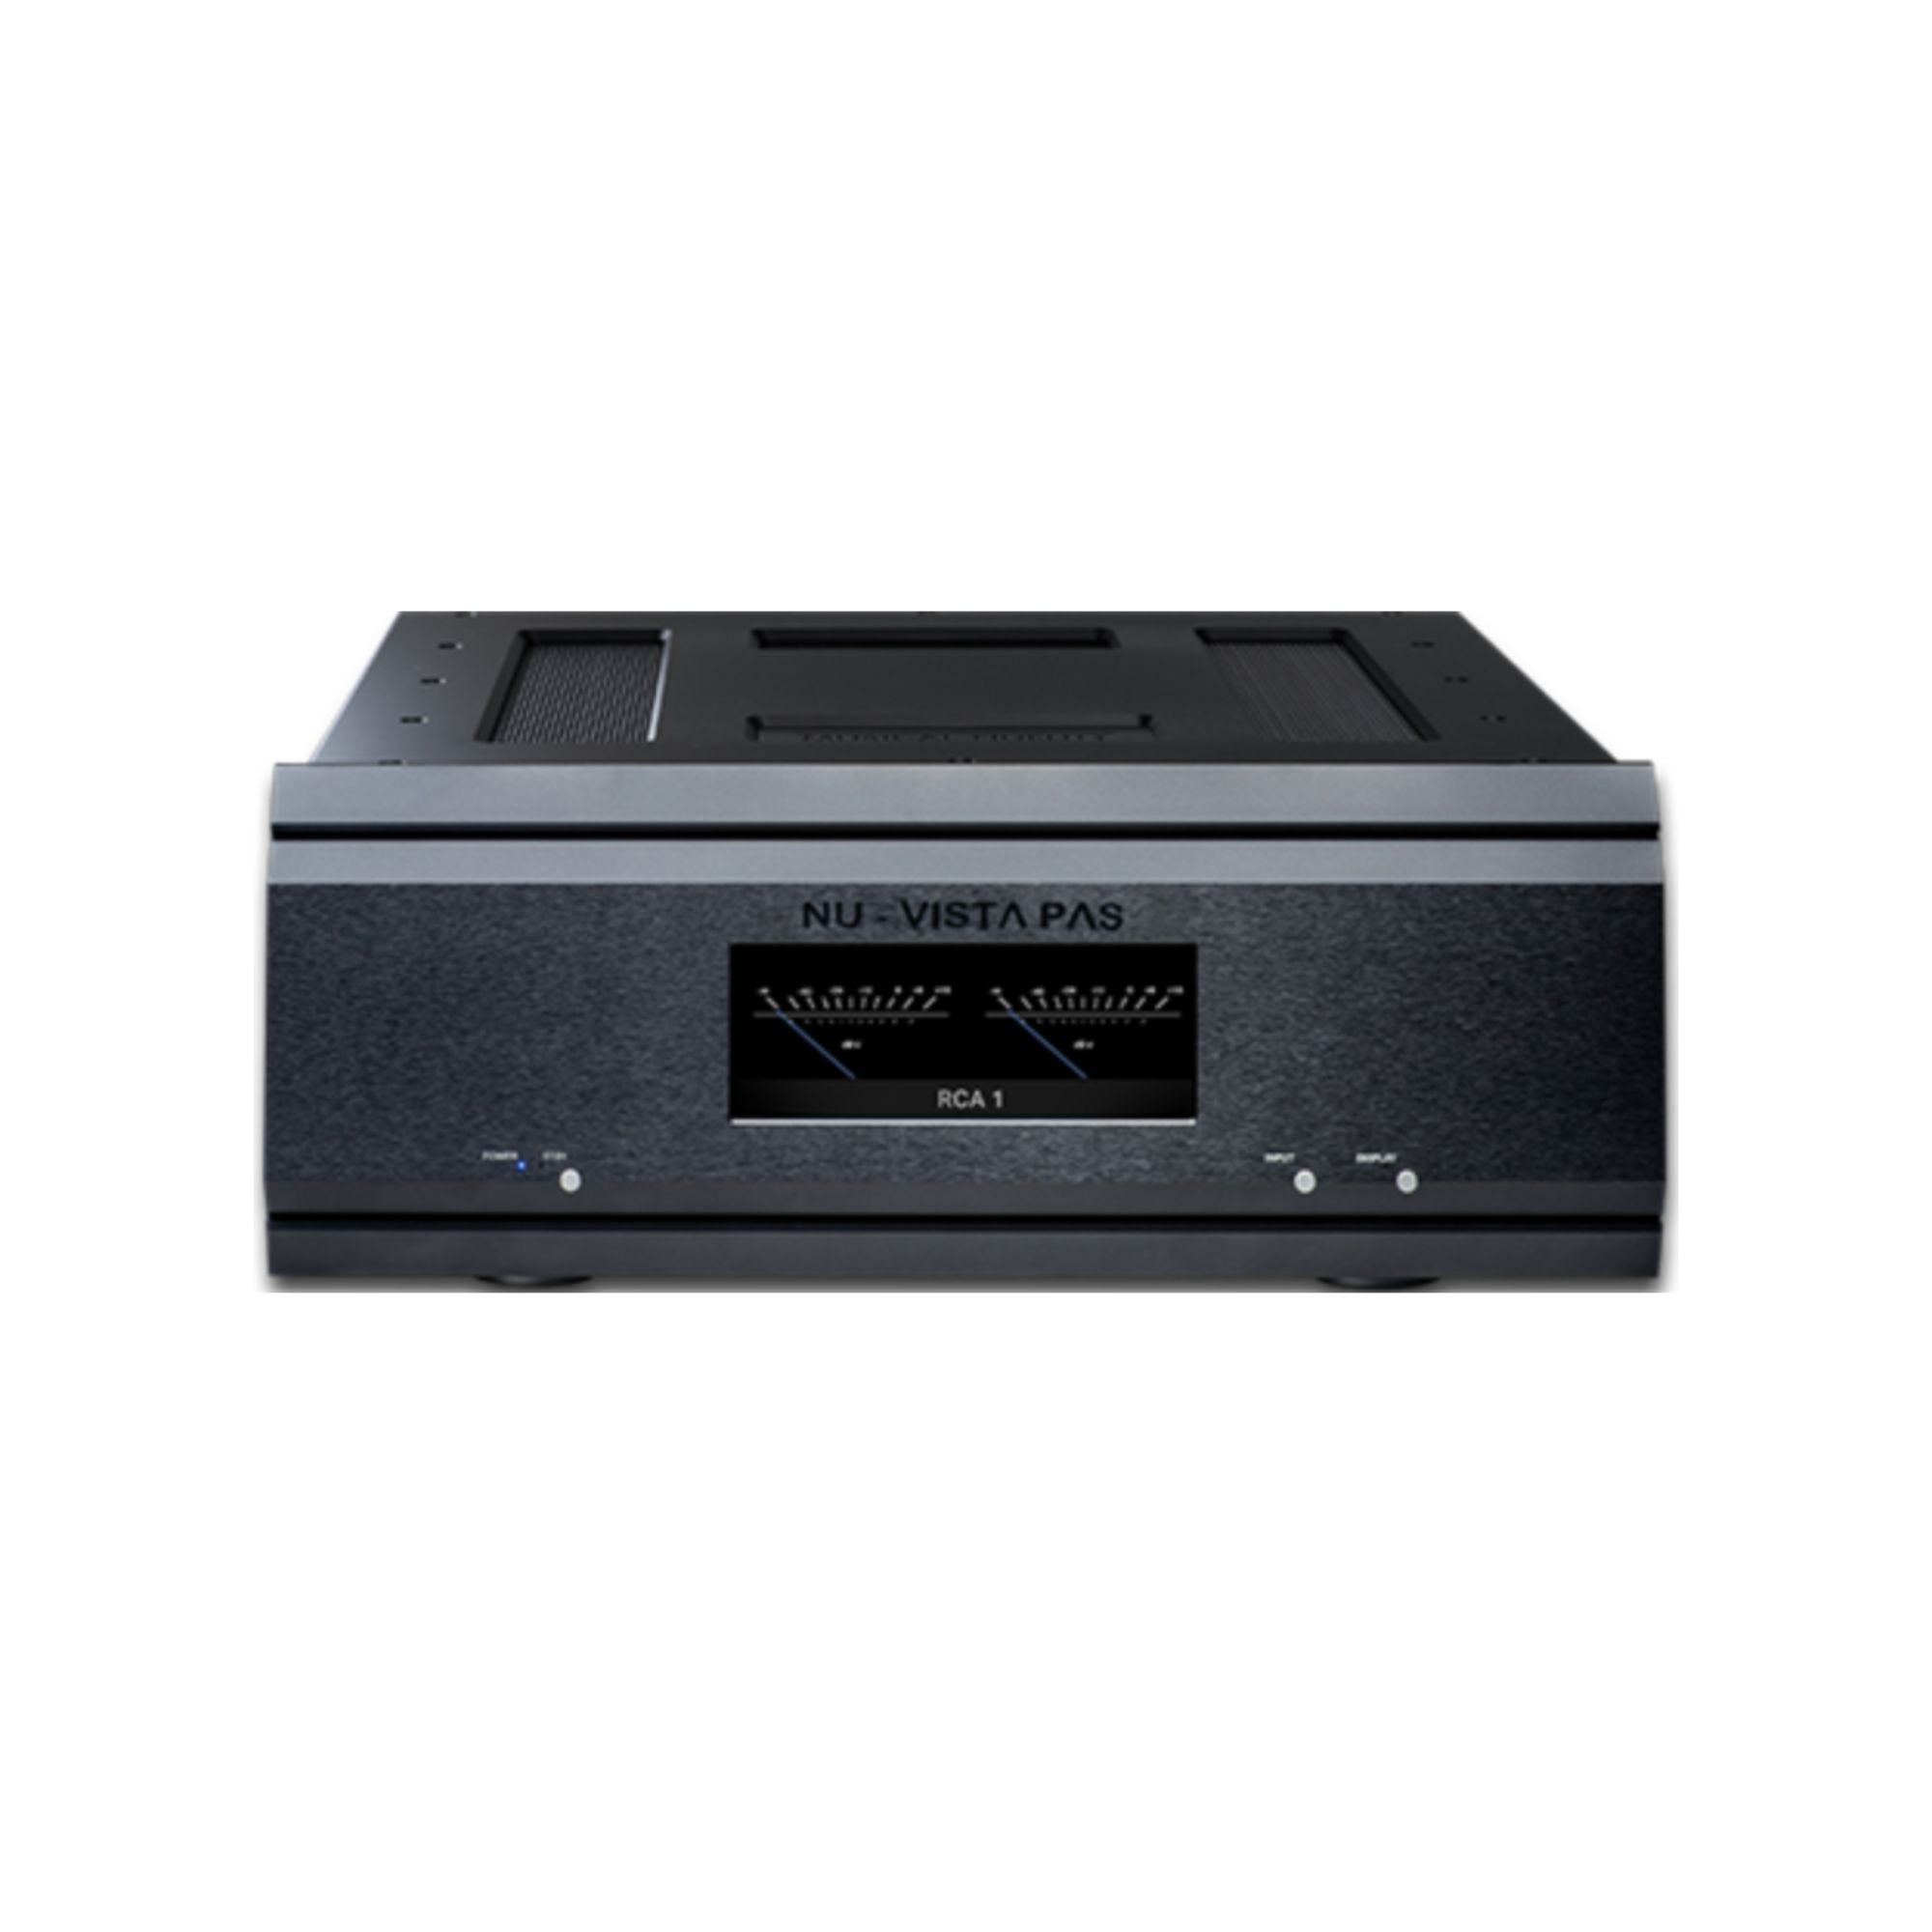 Musicla Fidelity Nu-Vista PAS - Power Amplifier, Musical Fidelity, Power Amplifier - AVStore.in